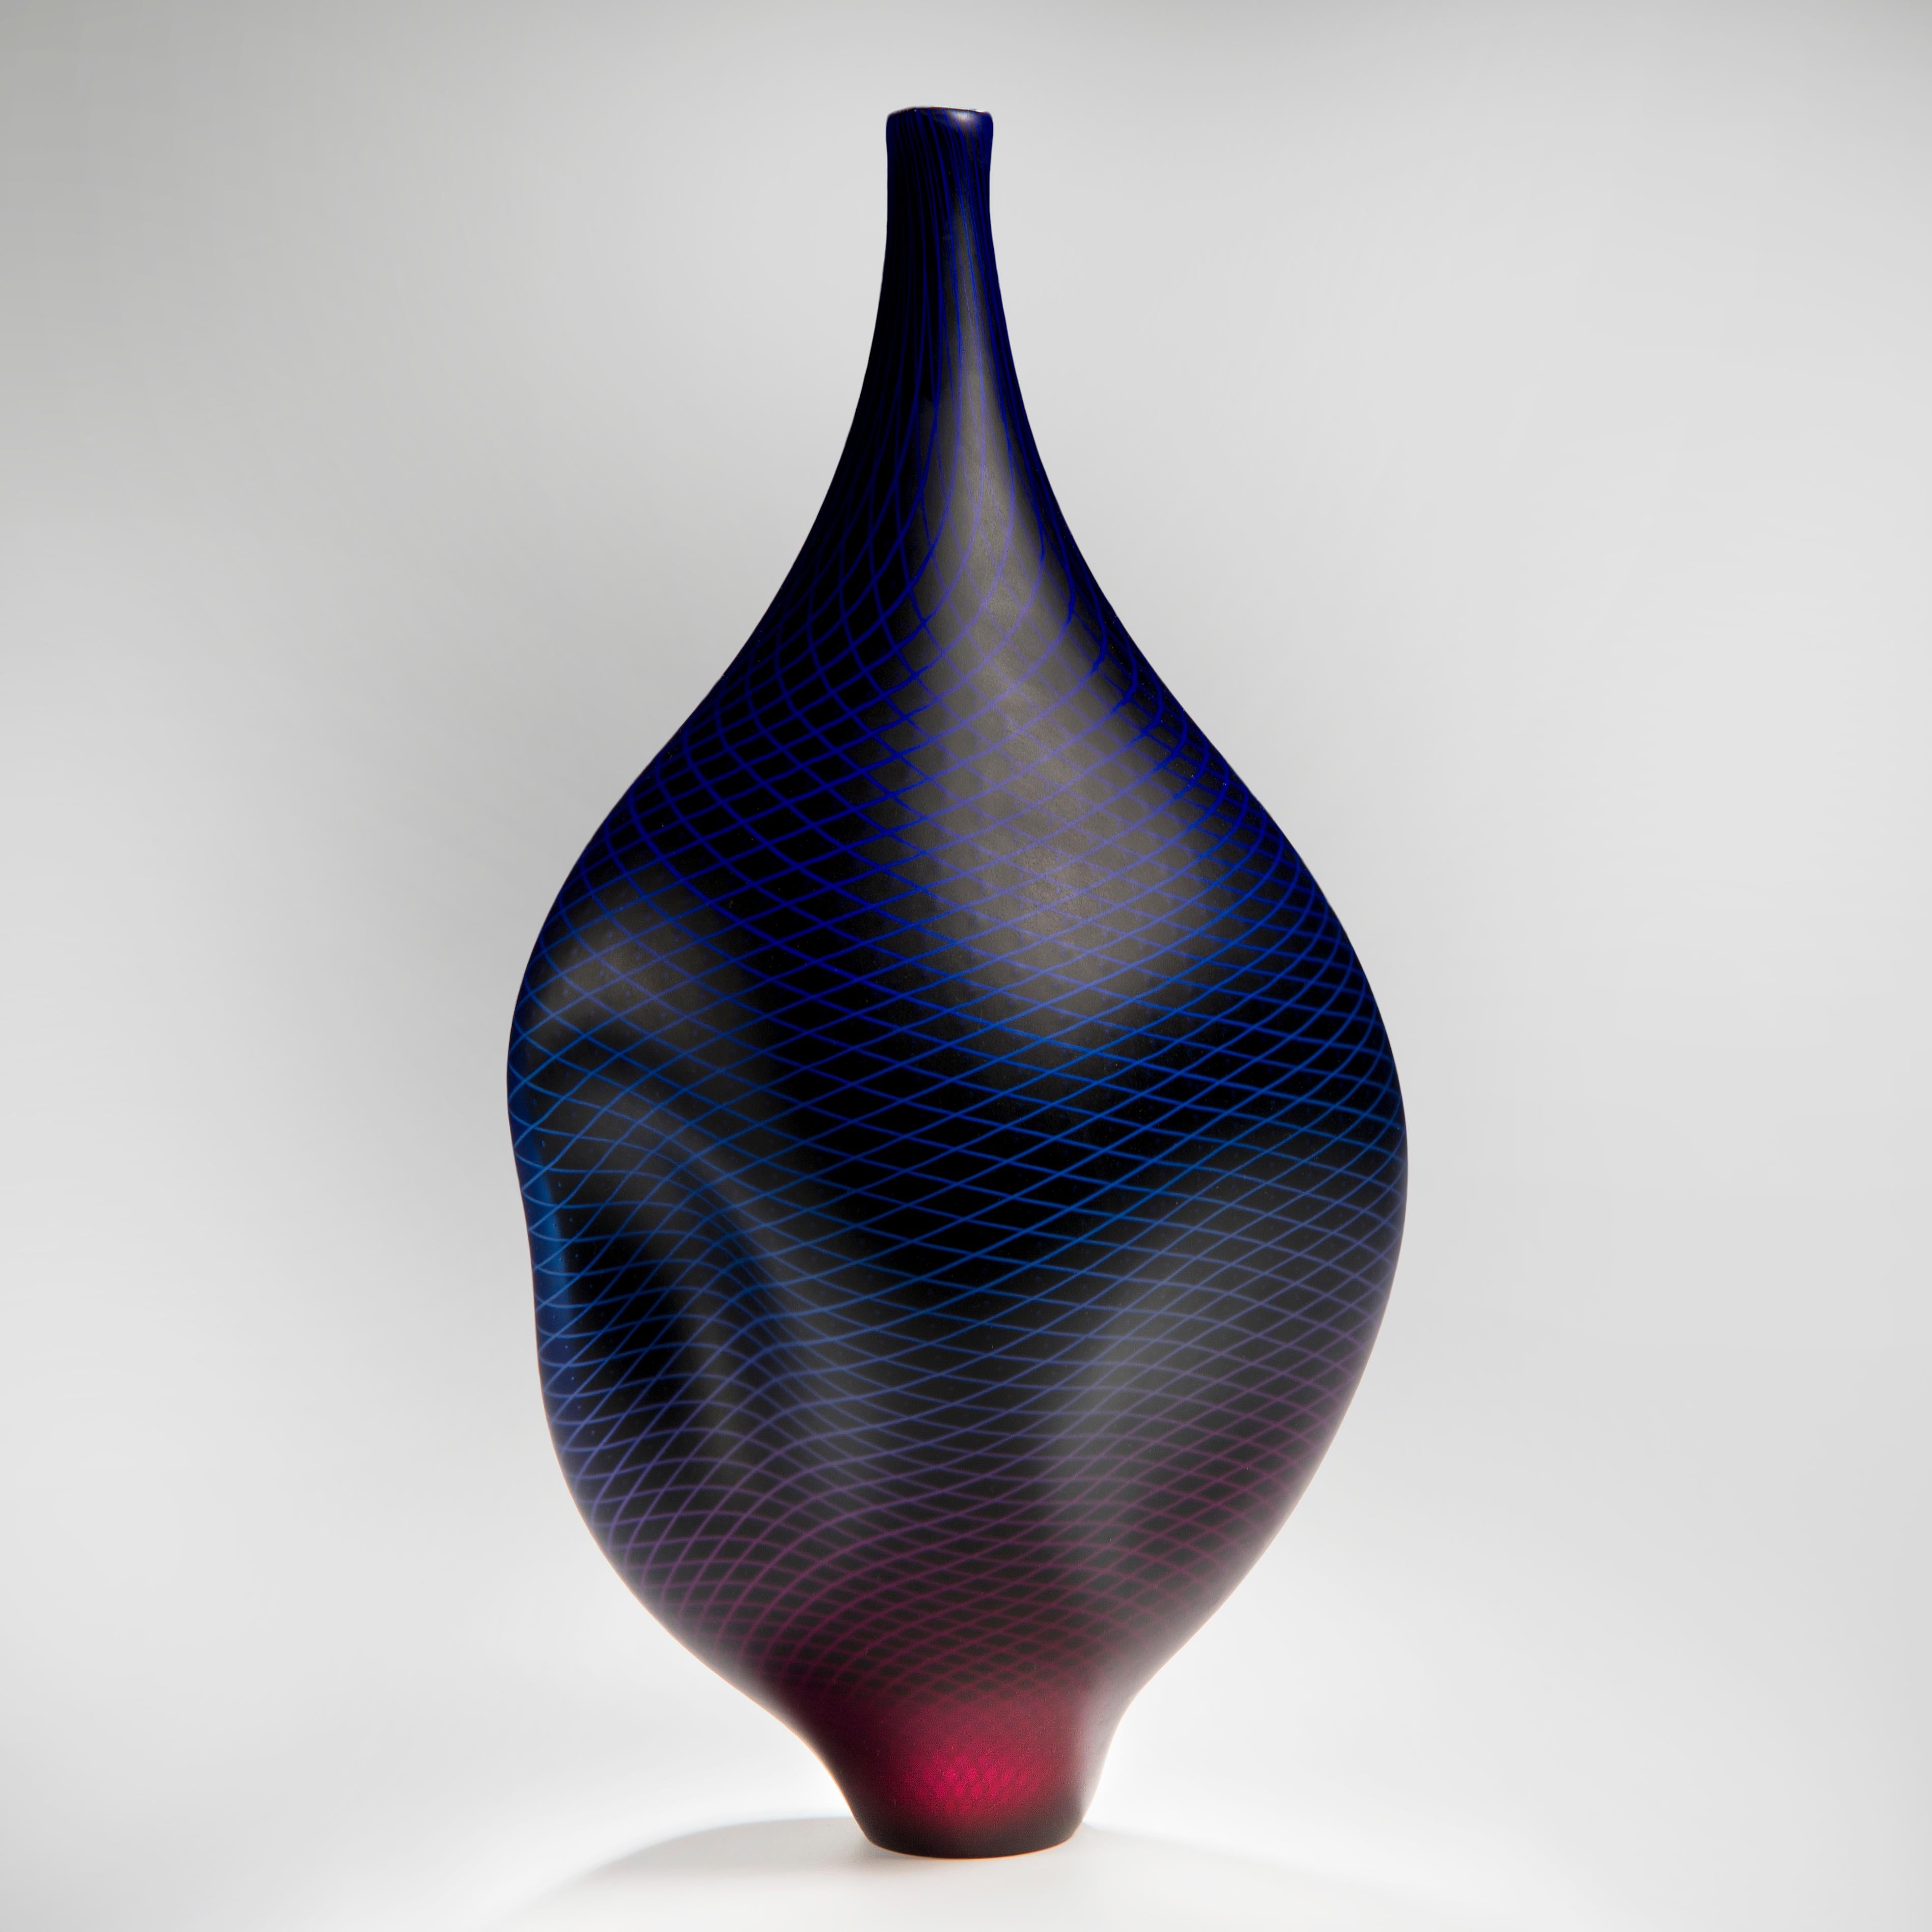 Warp & Fade 017 est un récipient unique en verre soufflé à la main avec de fins détails en canne blanche, créé par l'artiste britannique Liam Reeves. En incorporant des couches de verre, les couleurs supérieures bleu et rouge fusionnent pour créer